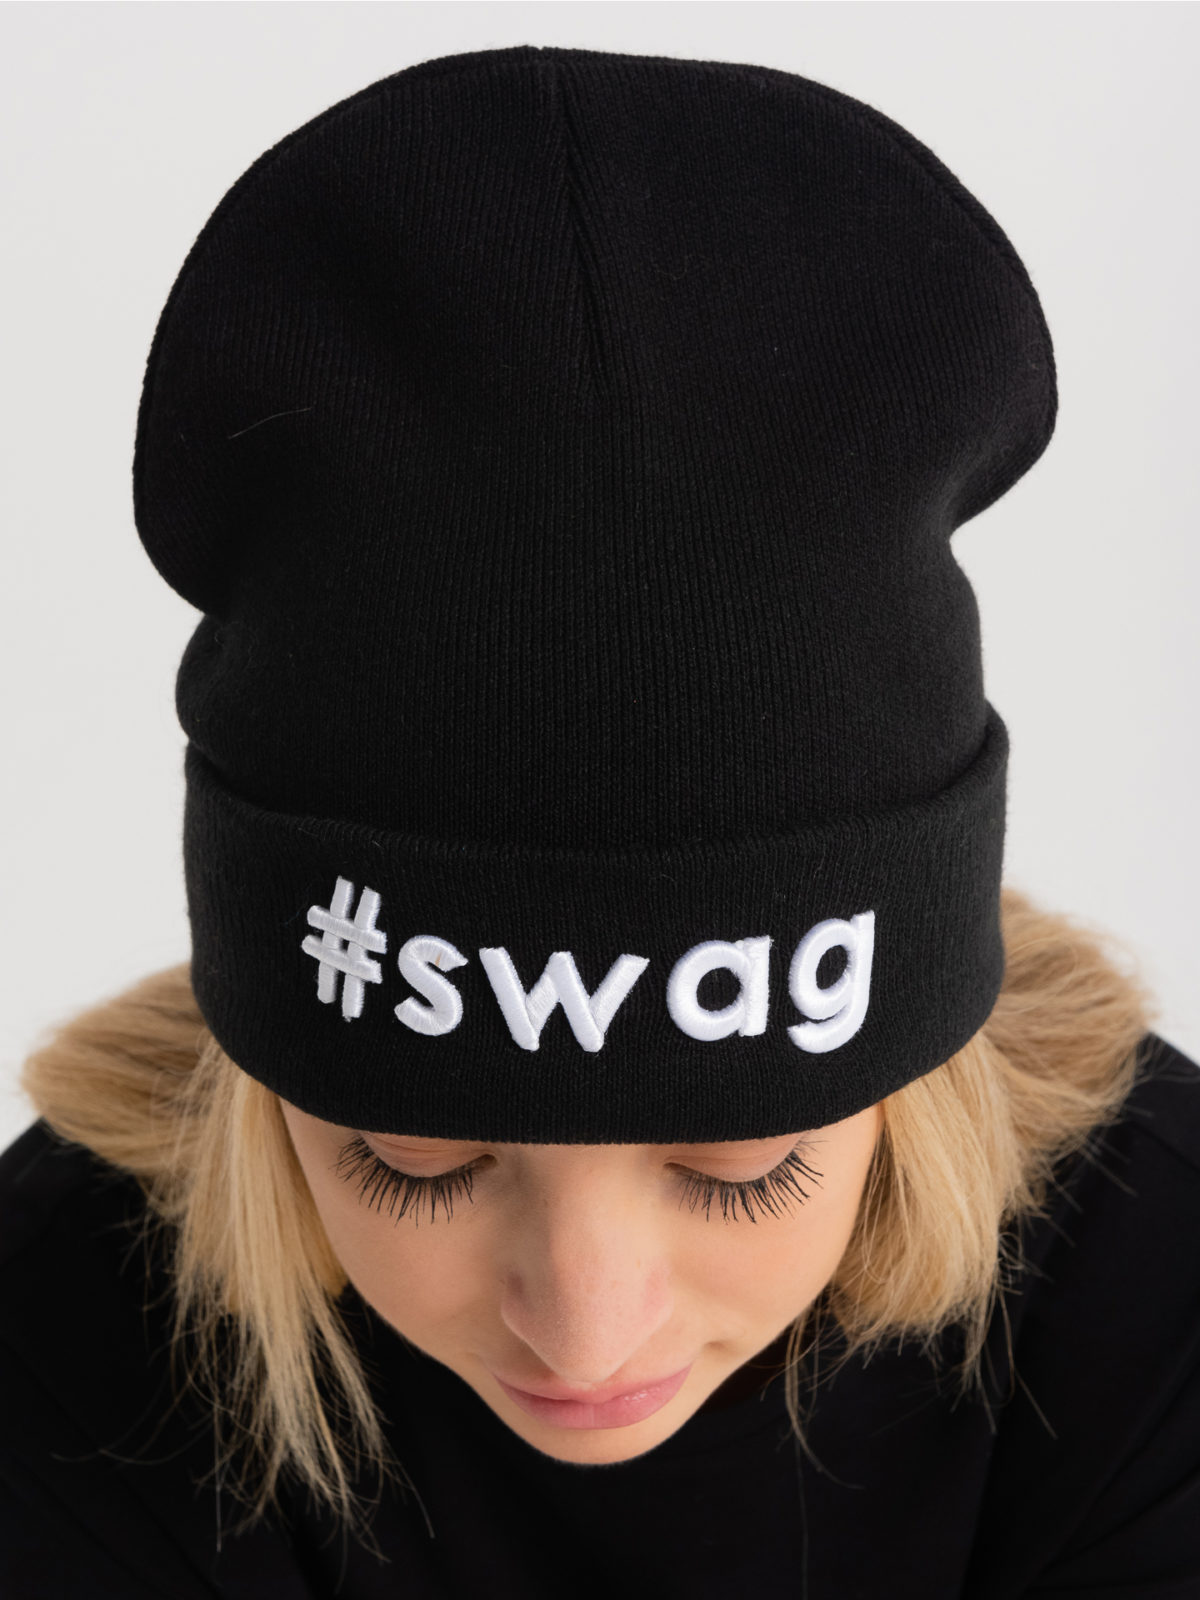 Шапка-лопатка Tag #swag - Черная 2